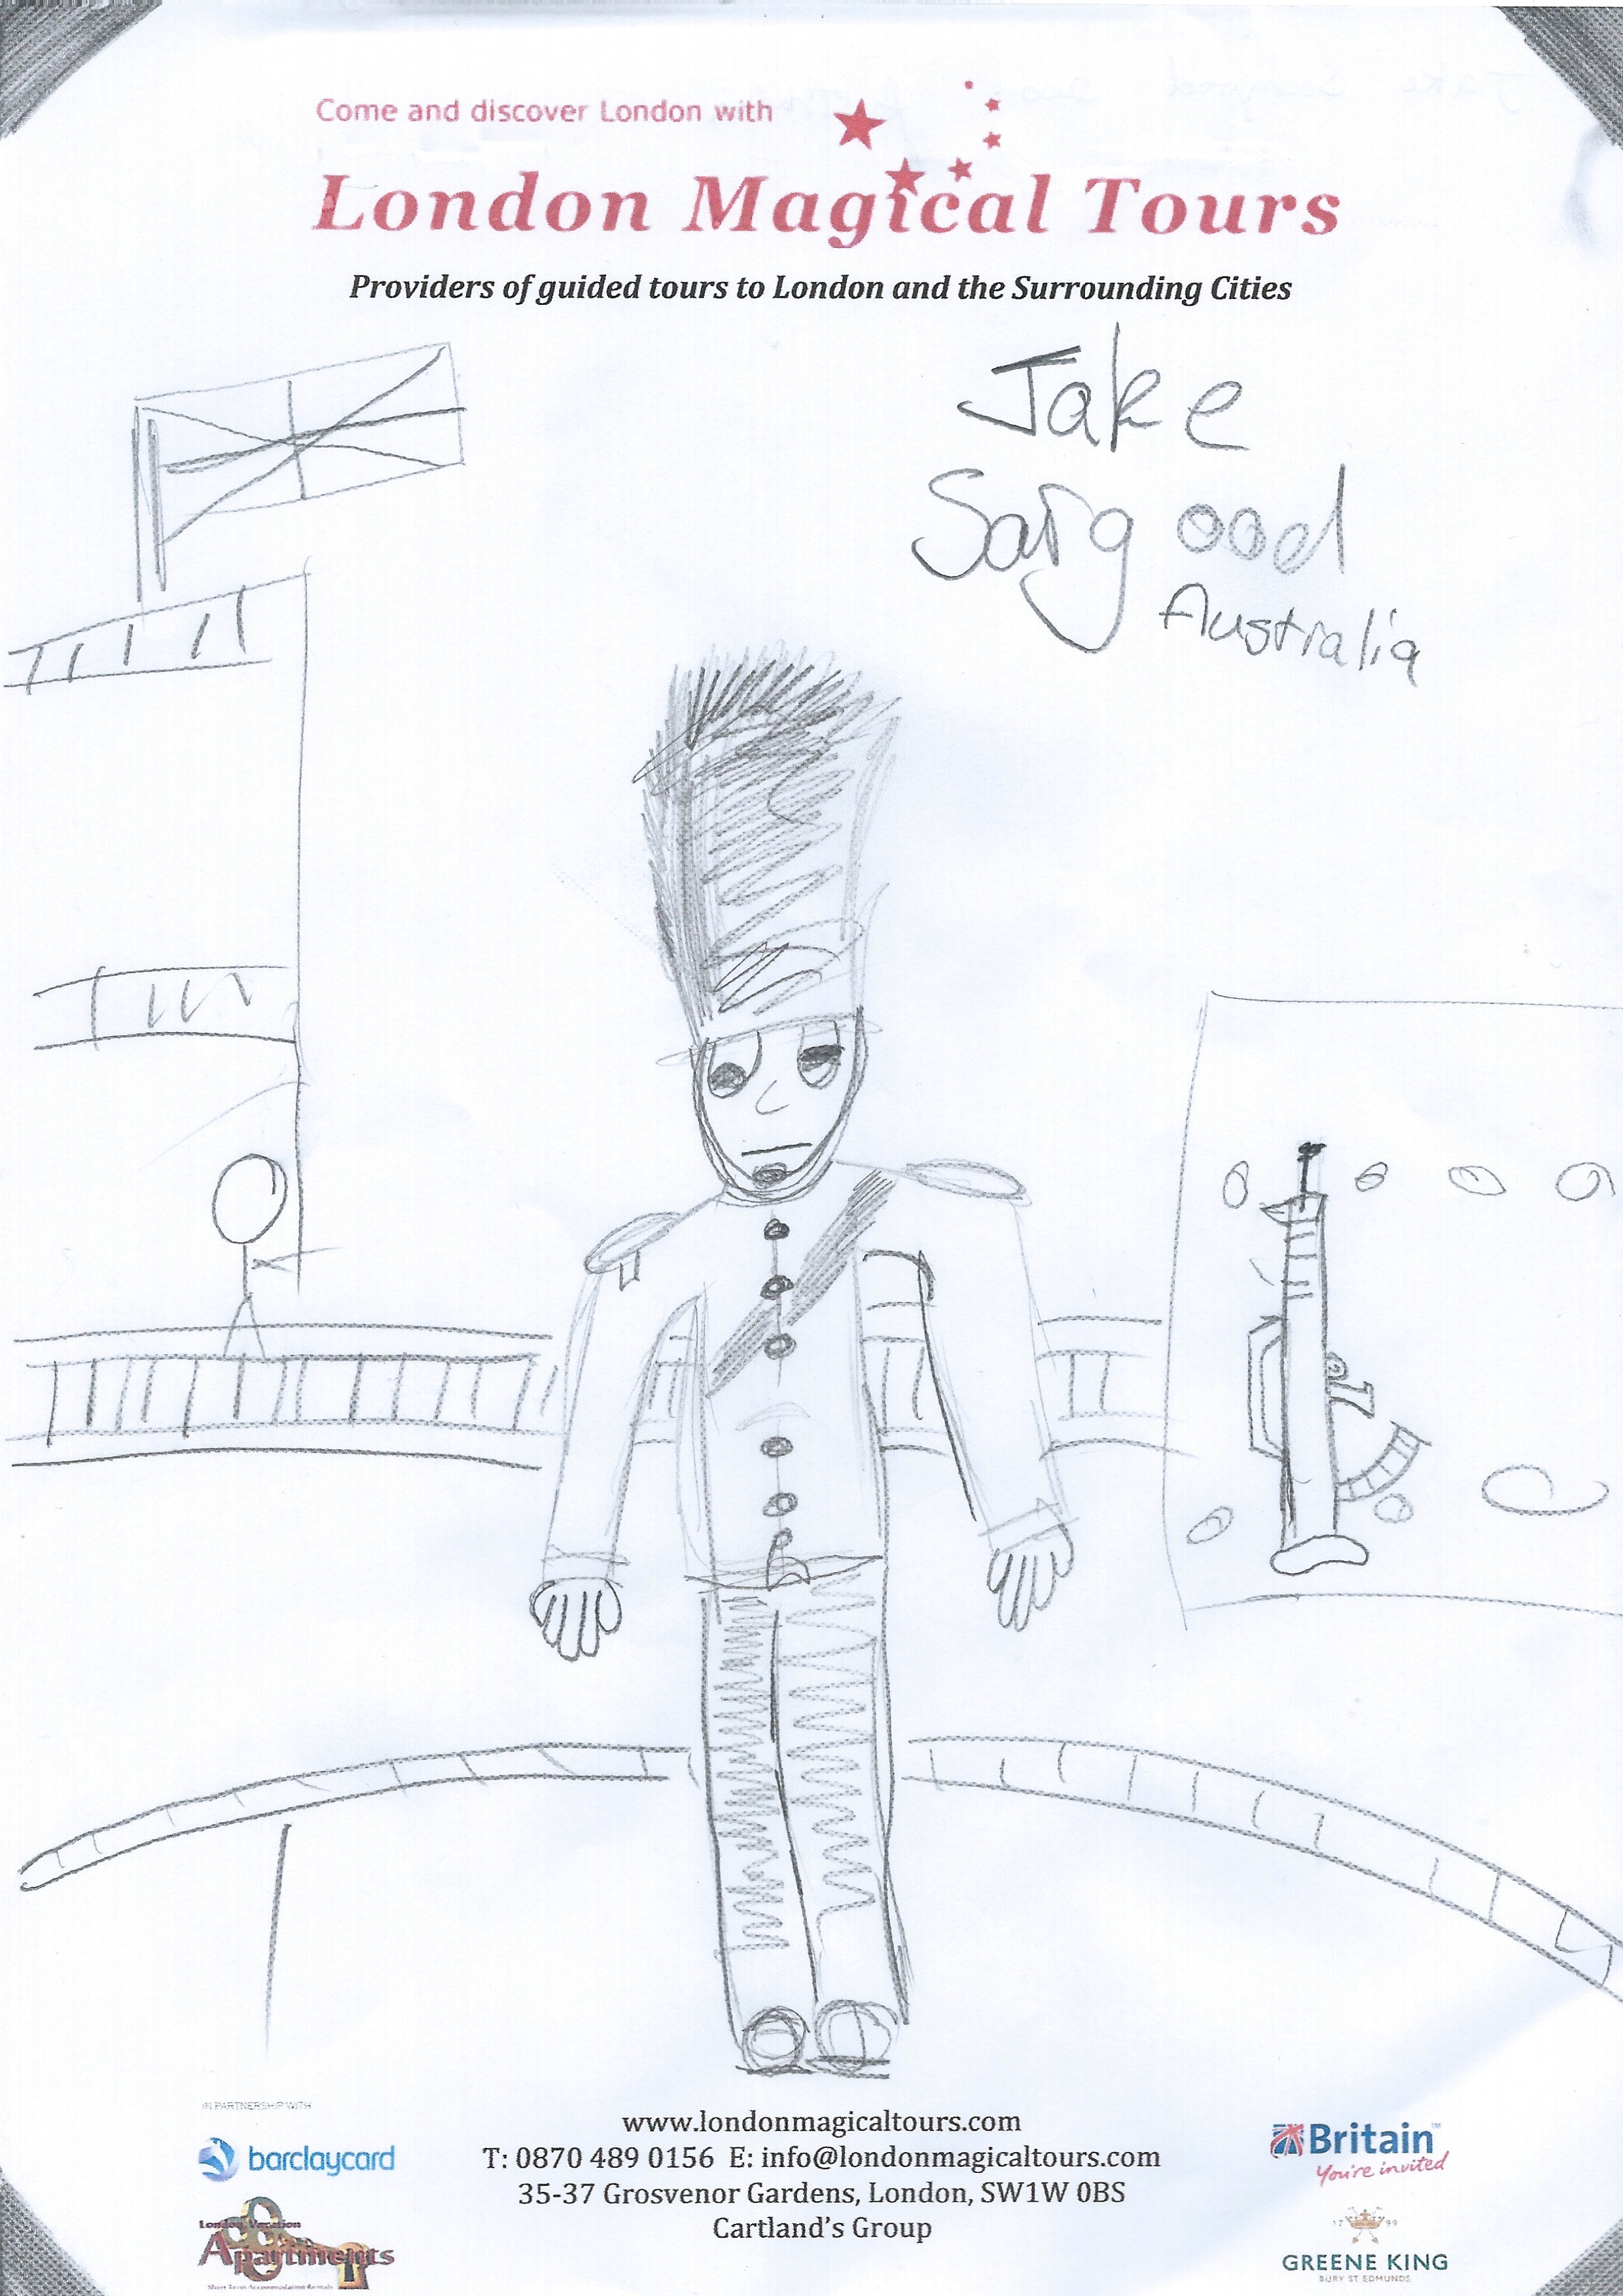 Jake Sargood Drawing